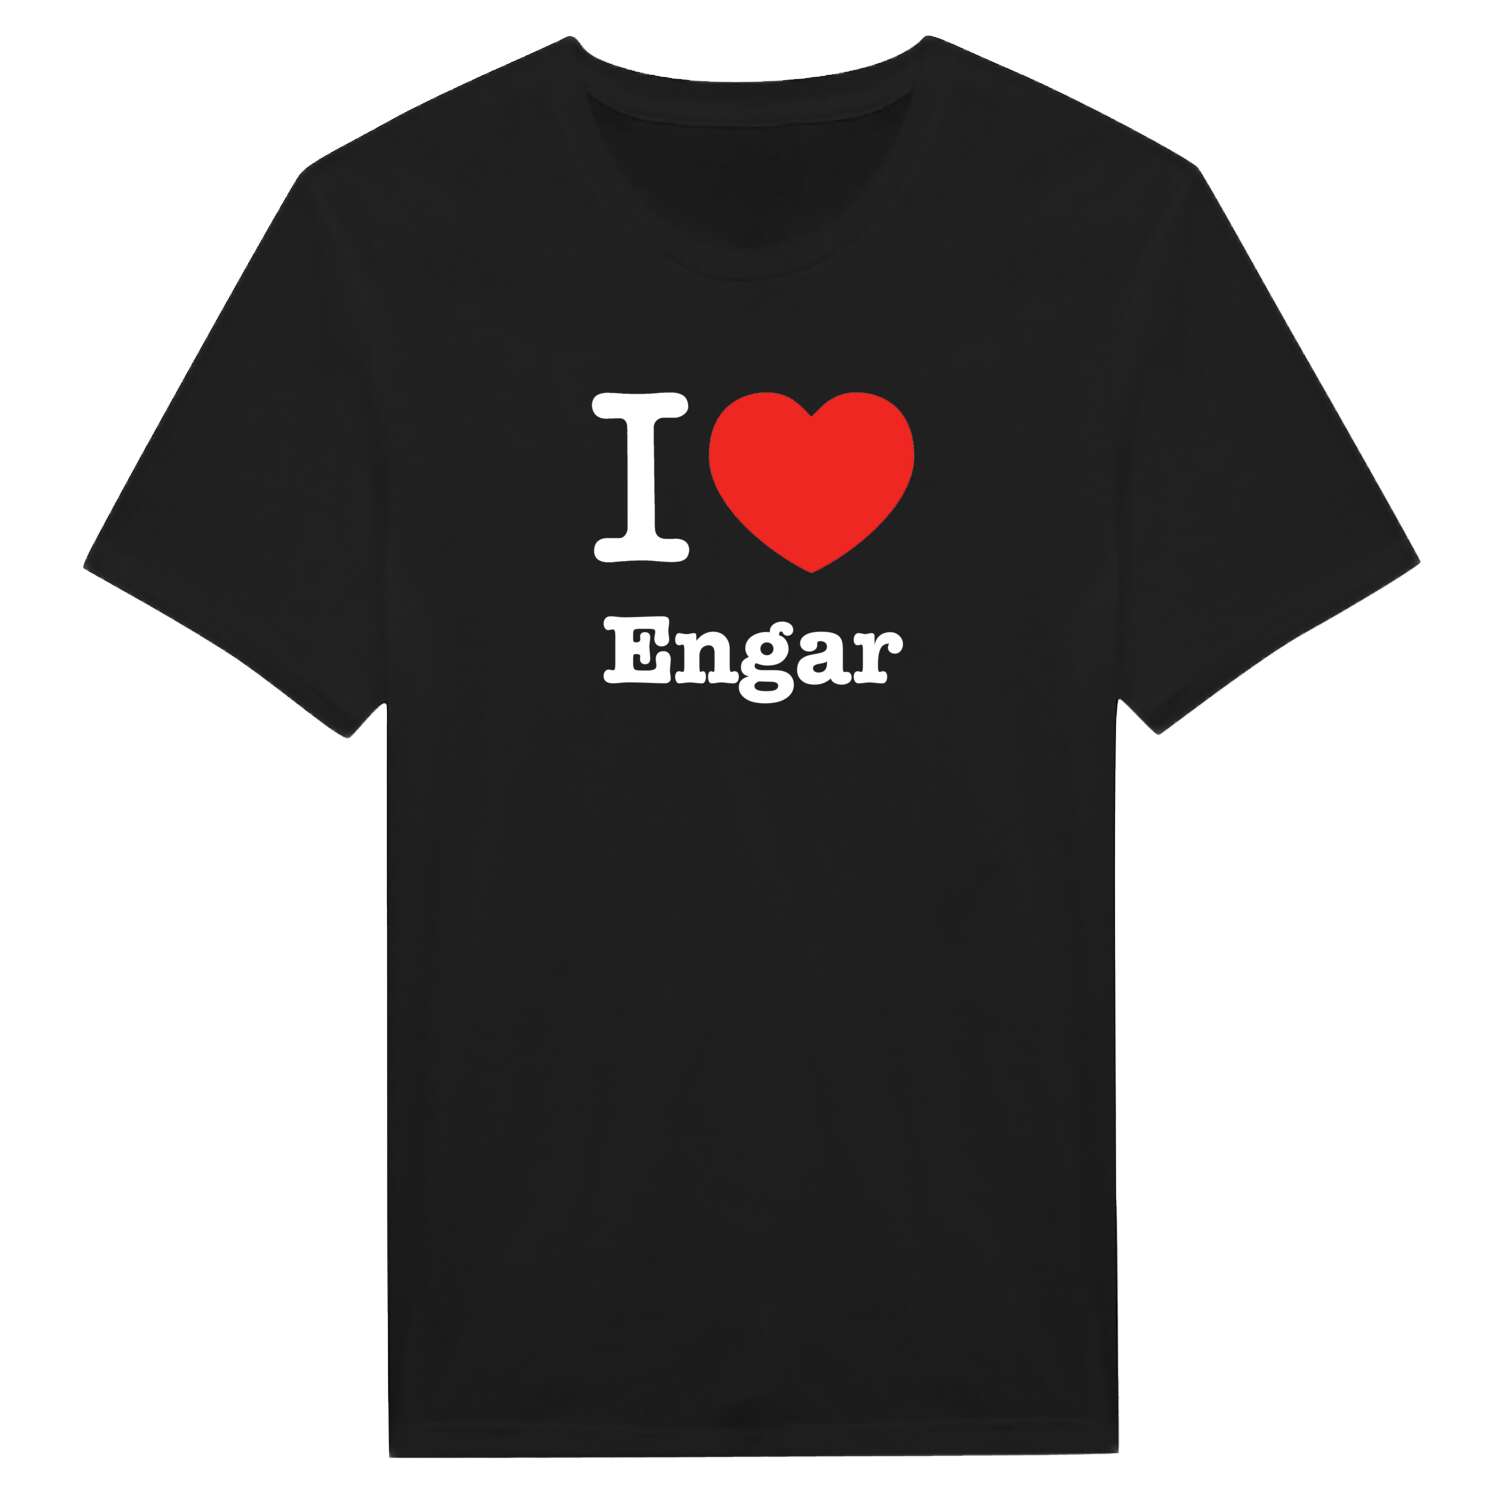 Engar T-Shirt »I love«